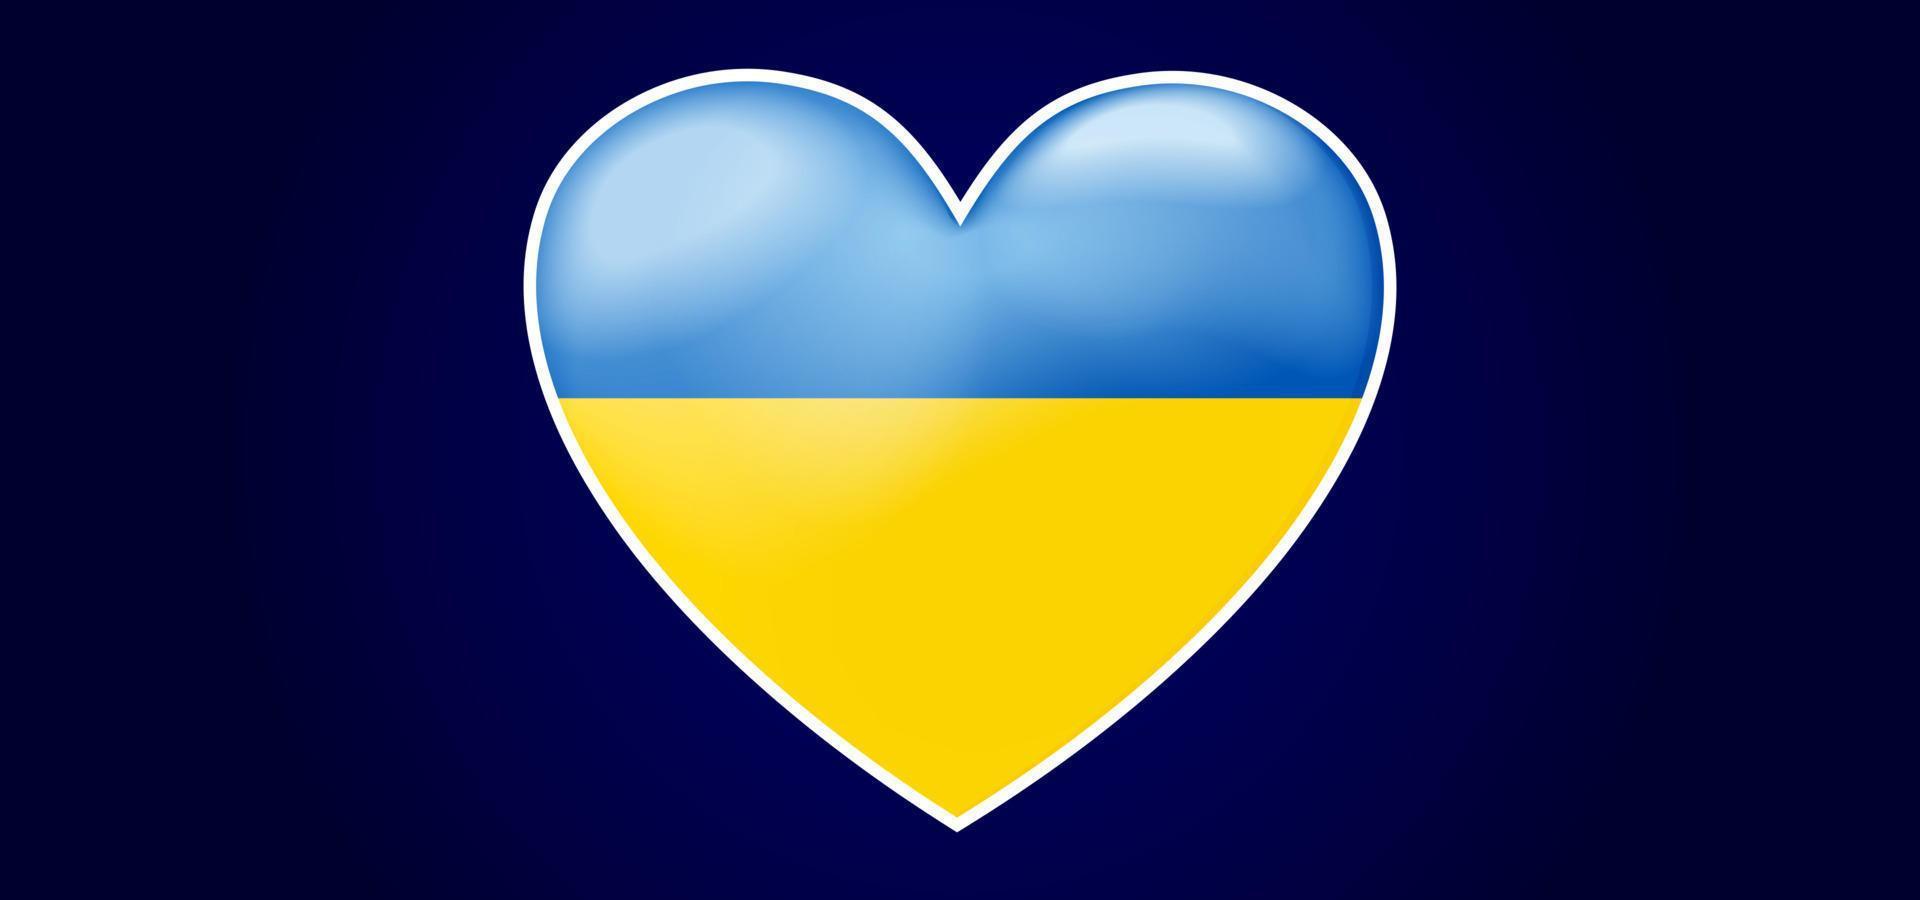 vector achtergrond met Oekraïne thema. hartsymbool met blauw en geel. vector bewerkbaar